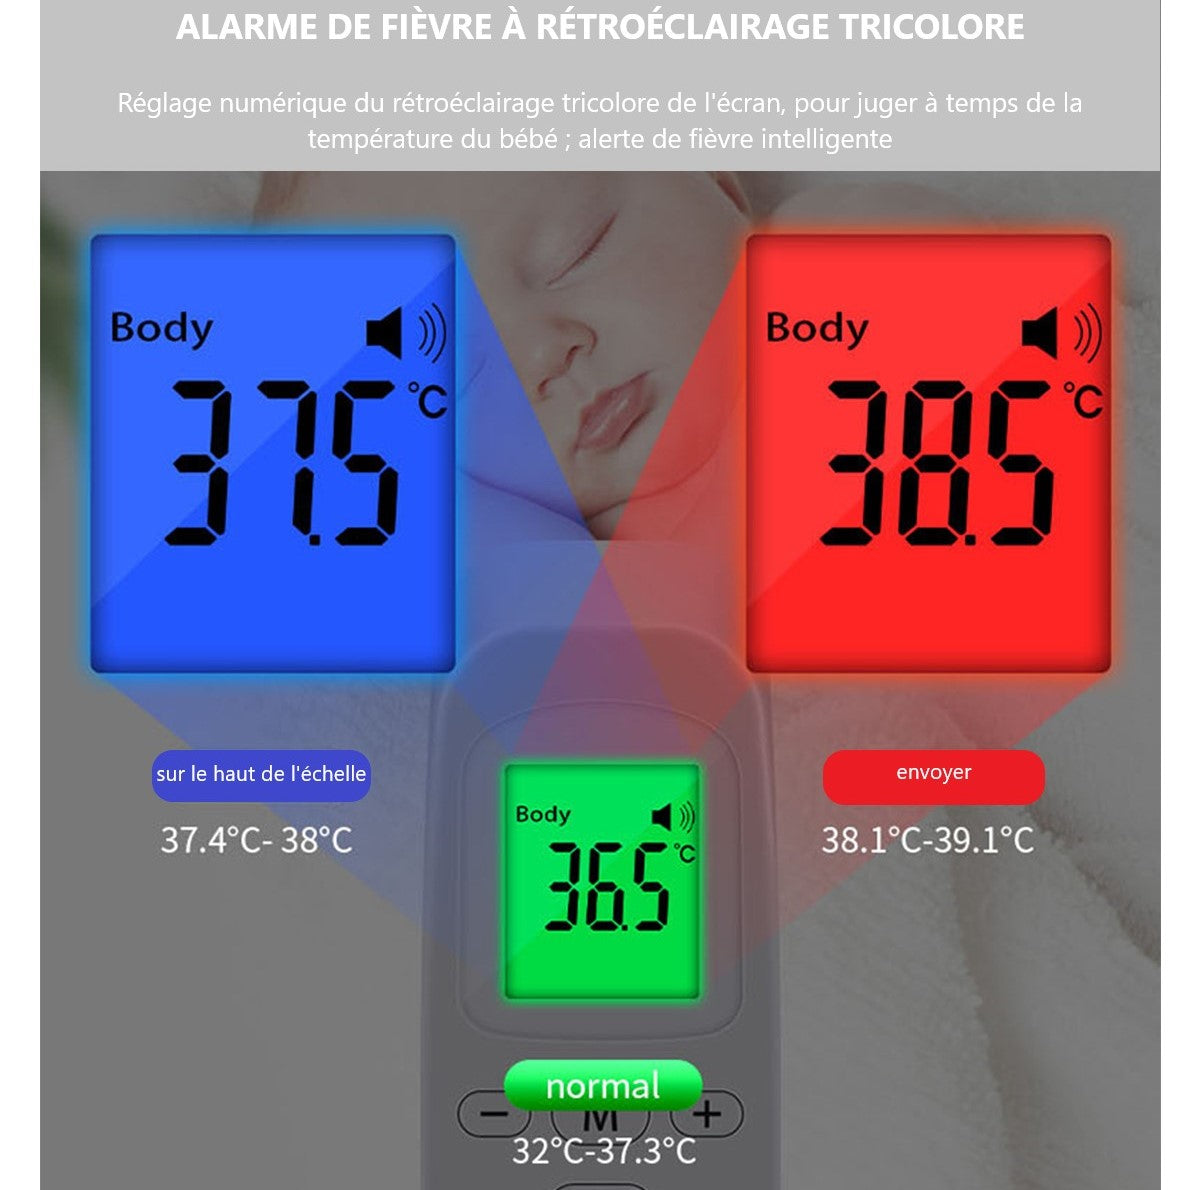 Thermomètres et instruments météorologiques - Temu France - Page 3